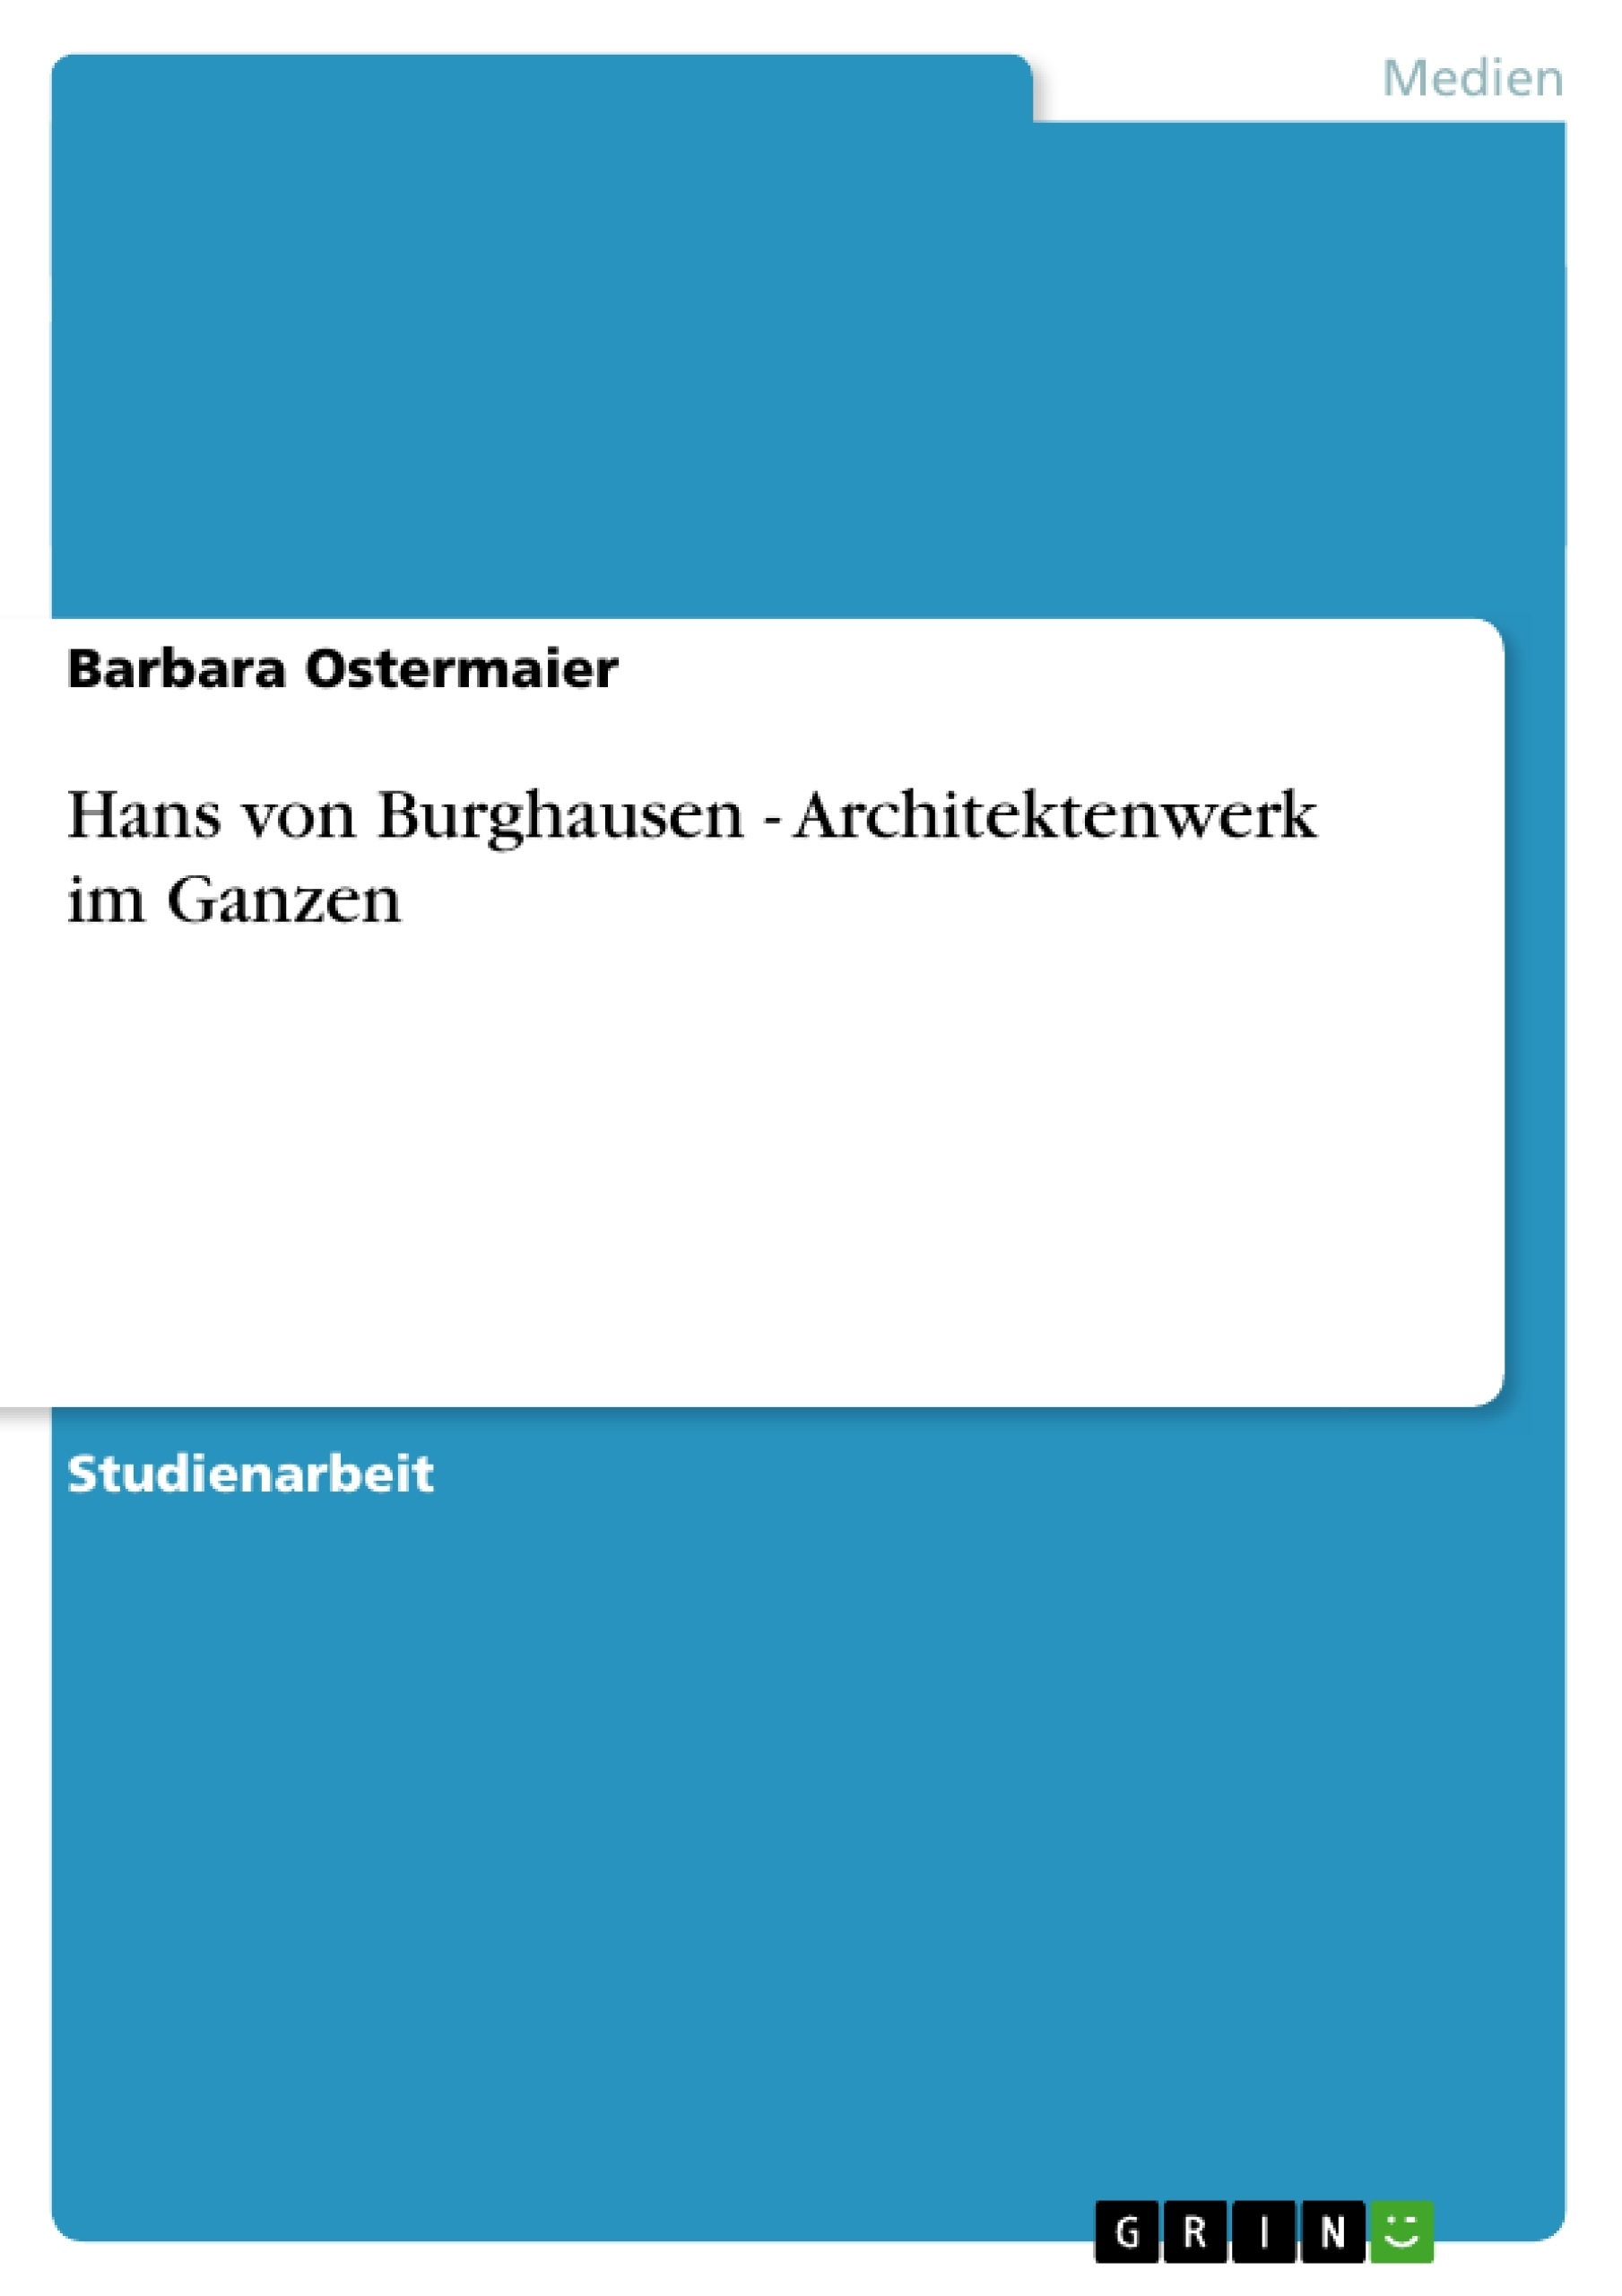 Titre: Hans von Burghausen - Architektenwerk im Ganzen